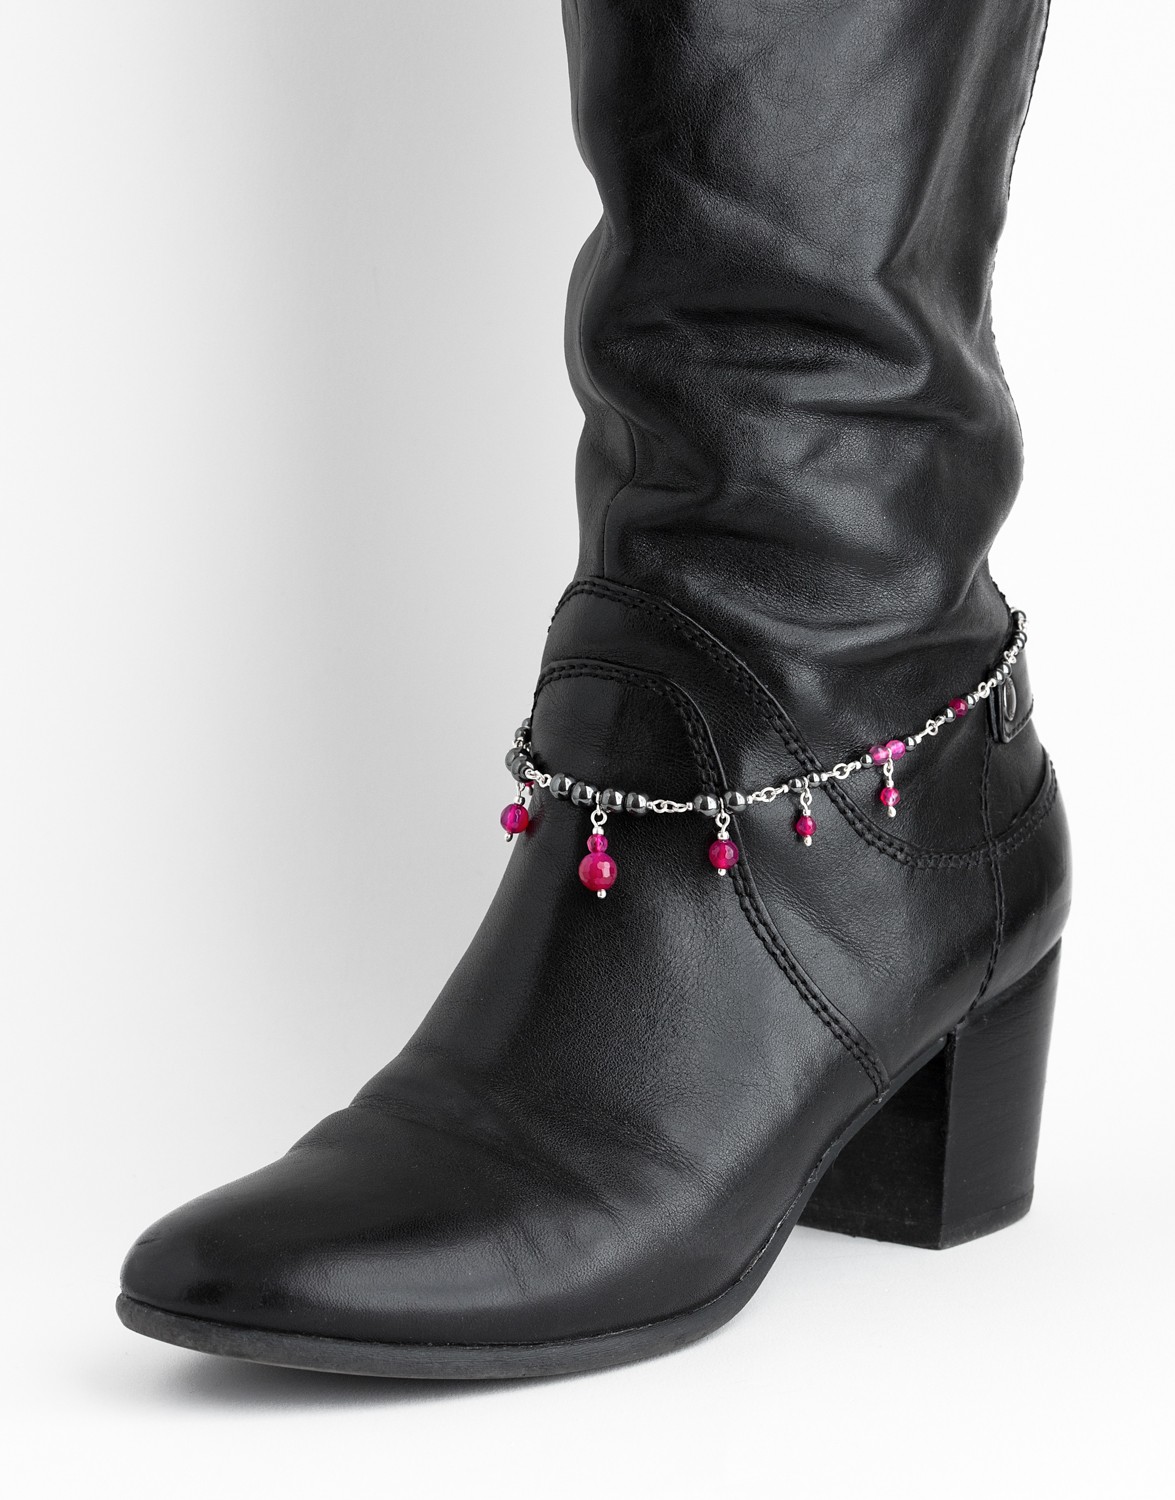 Bracelet for Boots Uranis fuchsia Agate